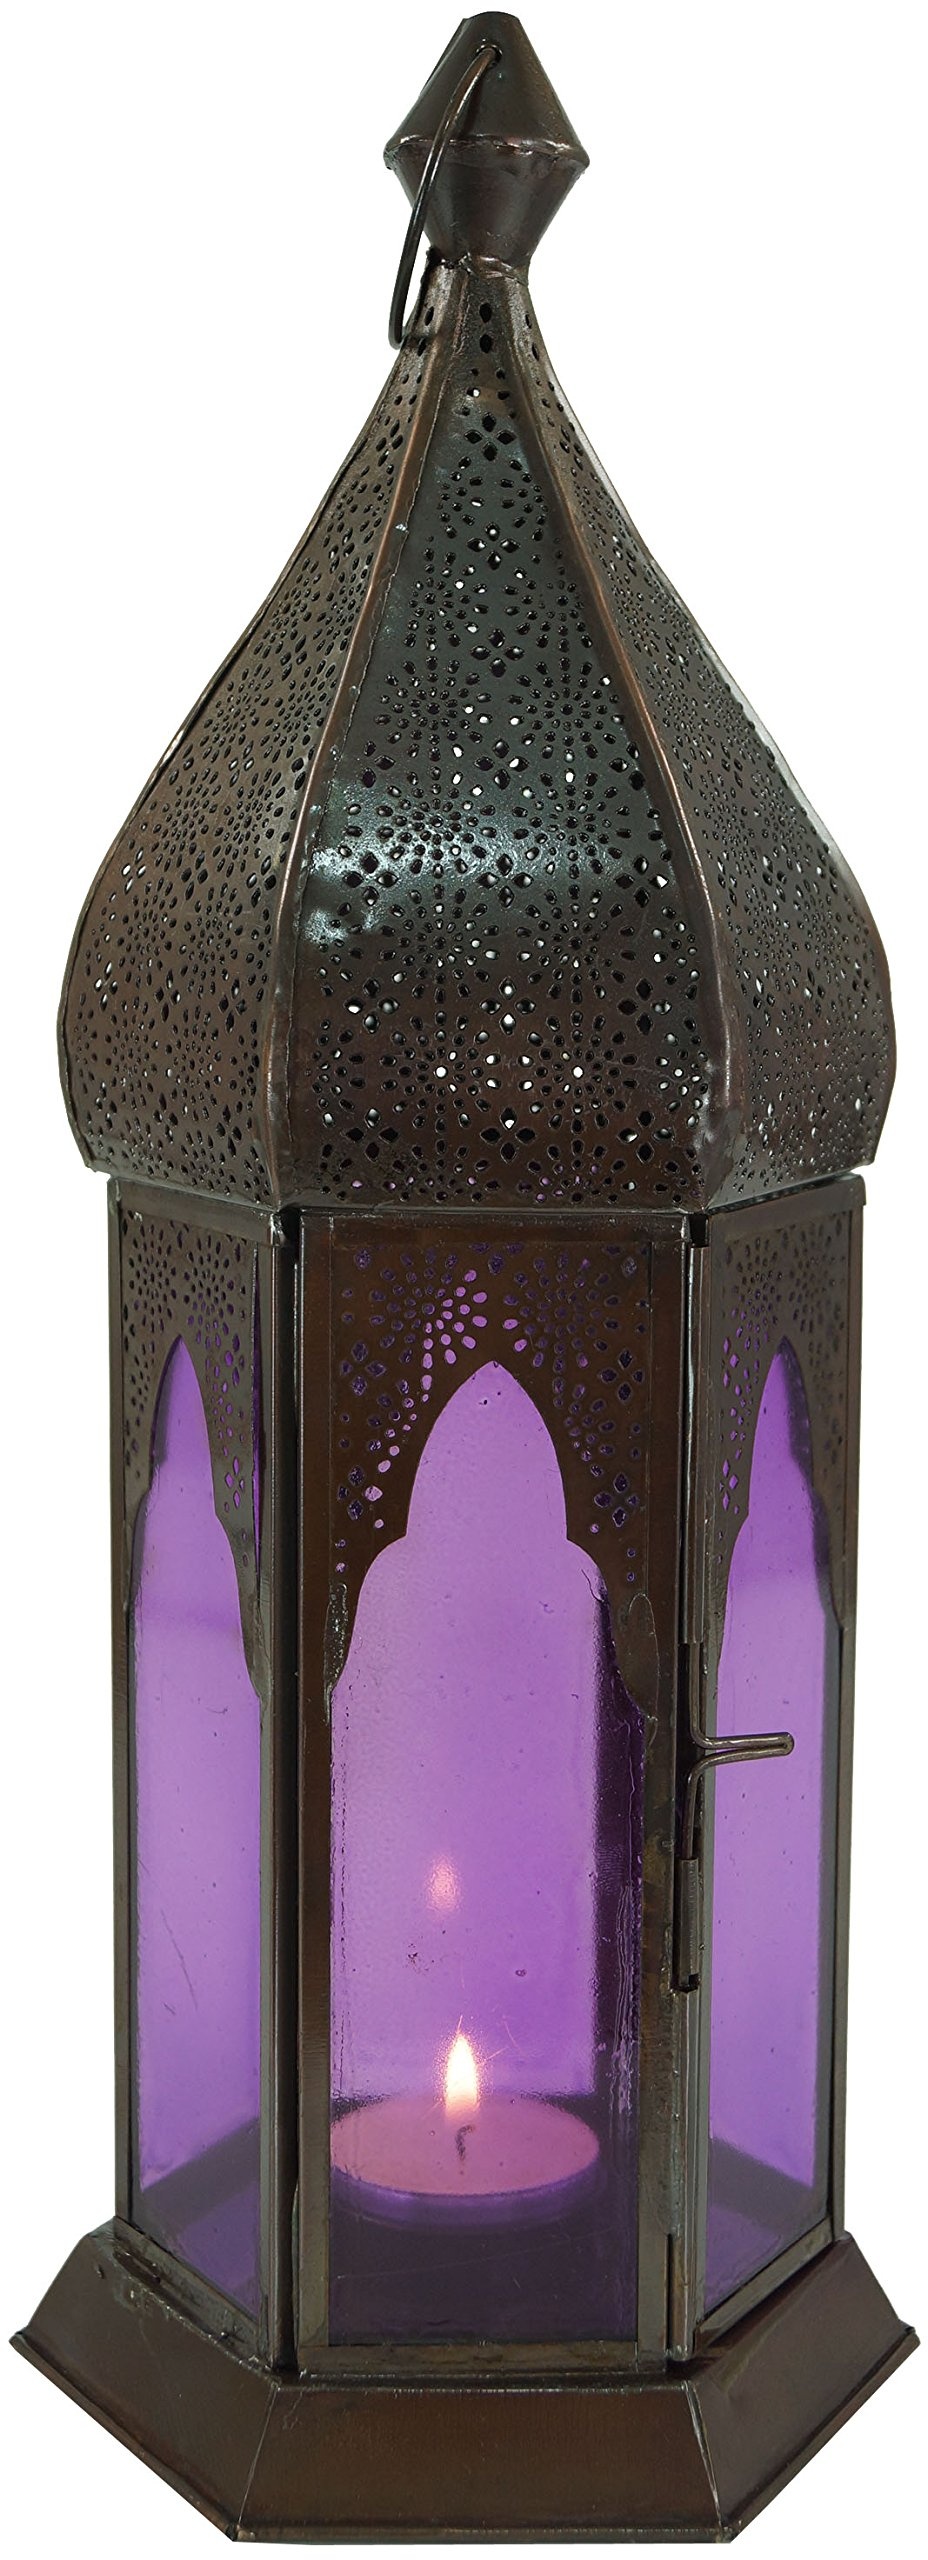 GURU SHOP Orientalische Metall/Glas Laterne in Marrokanischem Design, Windlicht, Lila, Farbe: Lila, 33x12x12 cm, Orientalische Laternen